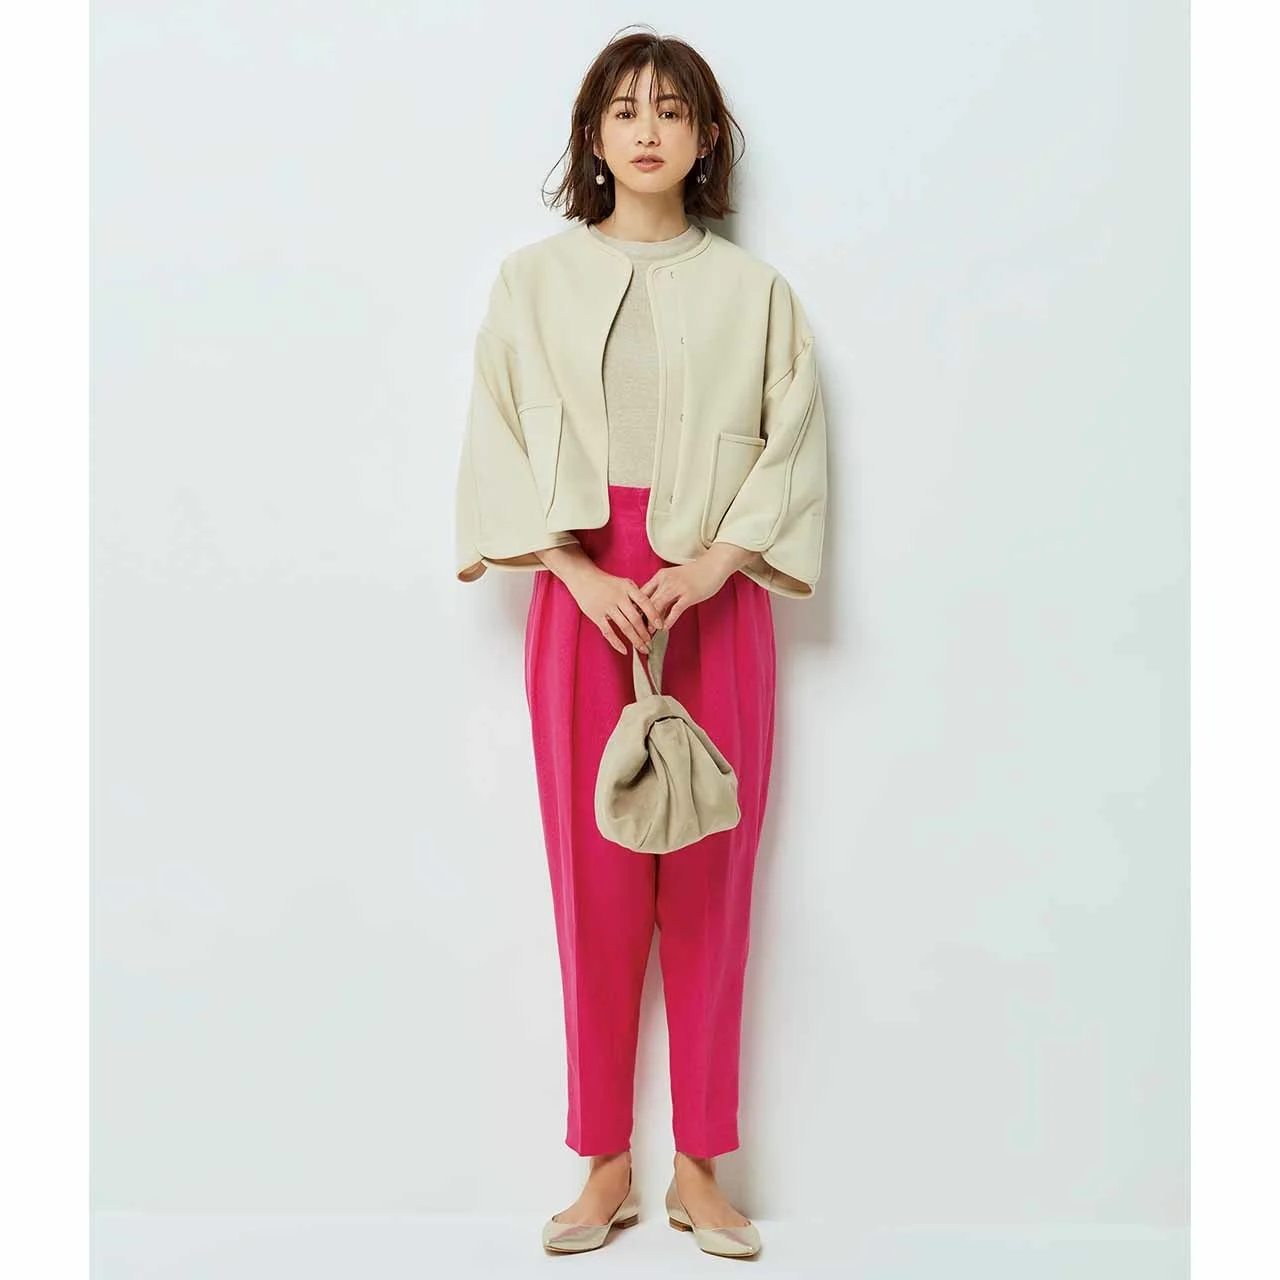 ノーカラージャケット×ピンクのパンツコーデを着たモデルの高垣麗子さん